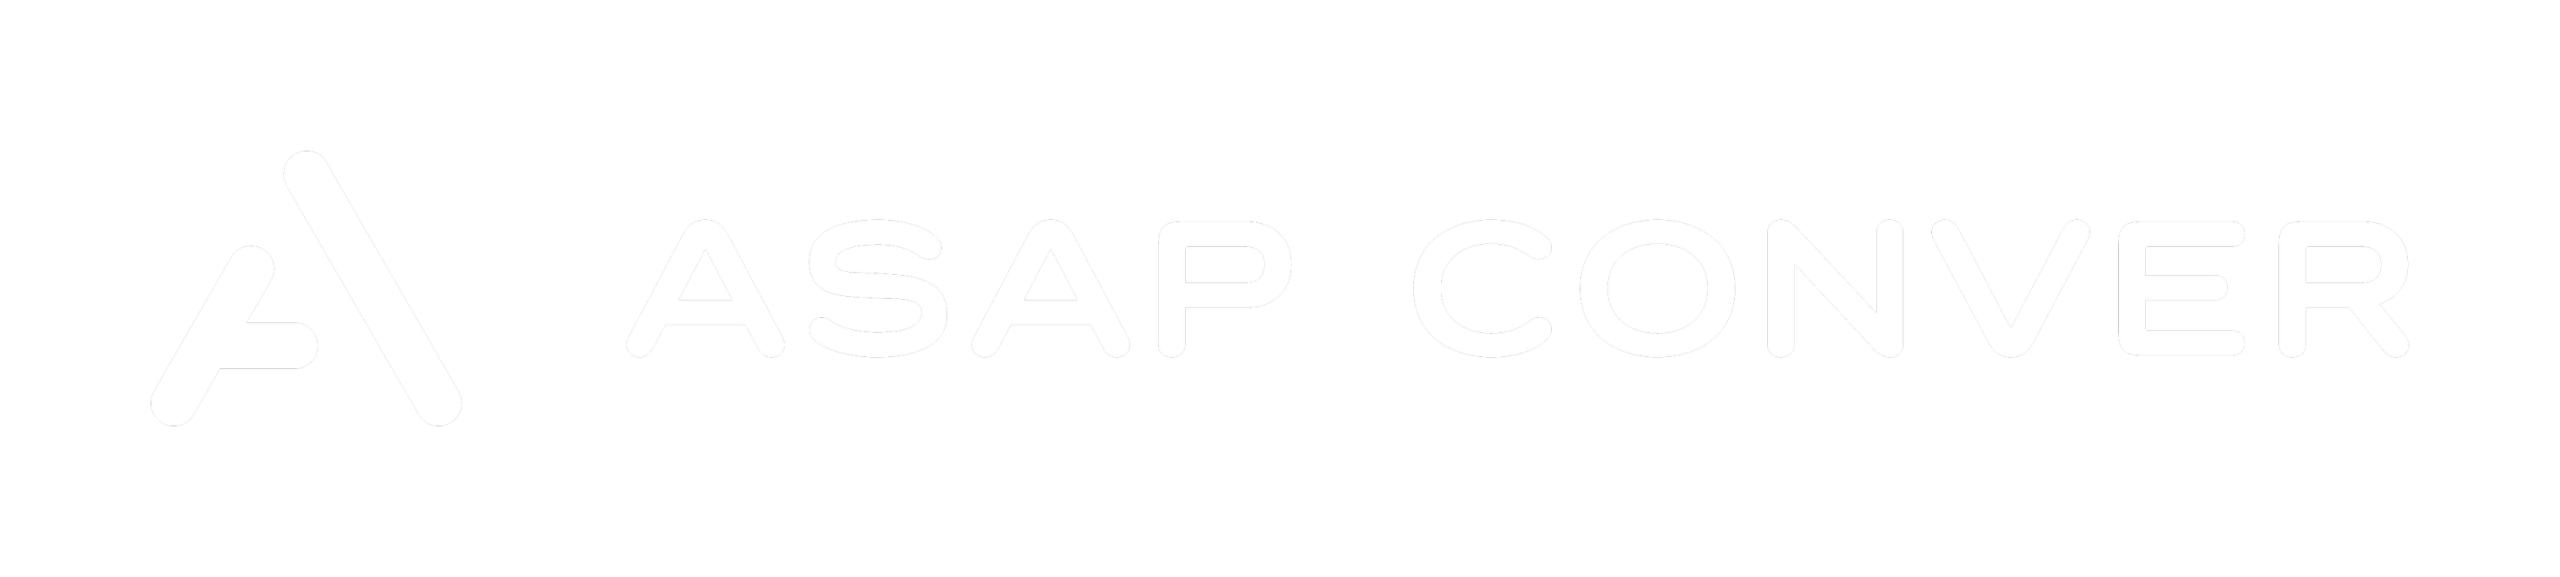 Asap conver logo white